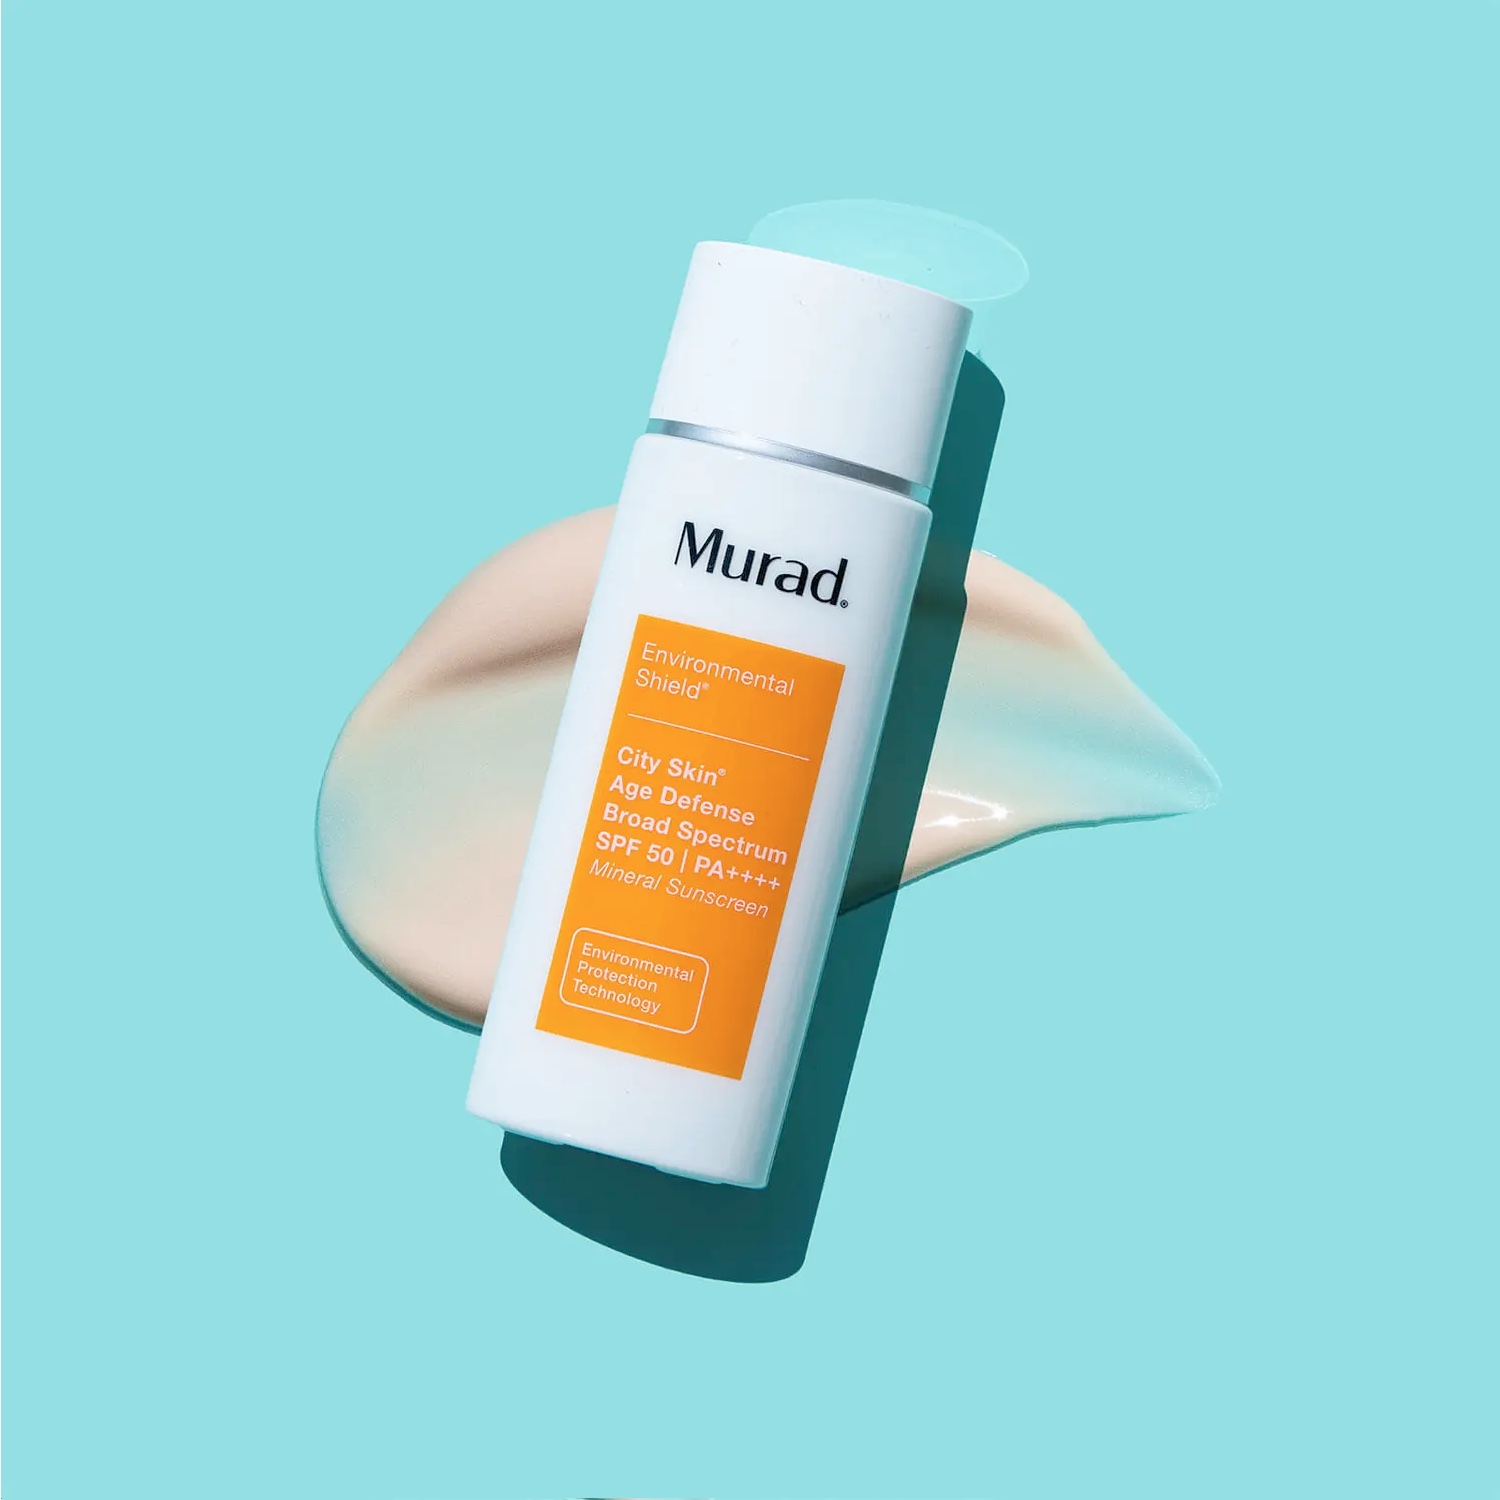 MURAD City Skin Age Defense Broad Spectrum mineralischer Sonnenschutz fürs Gesicht ohne Weißeln